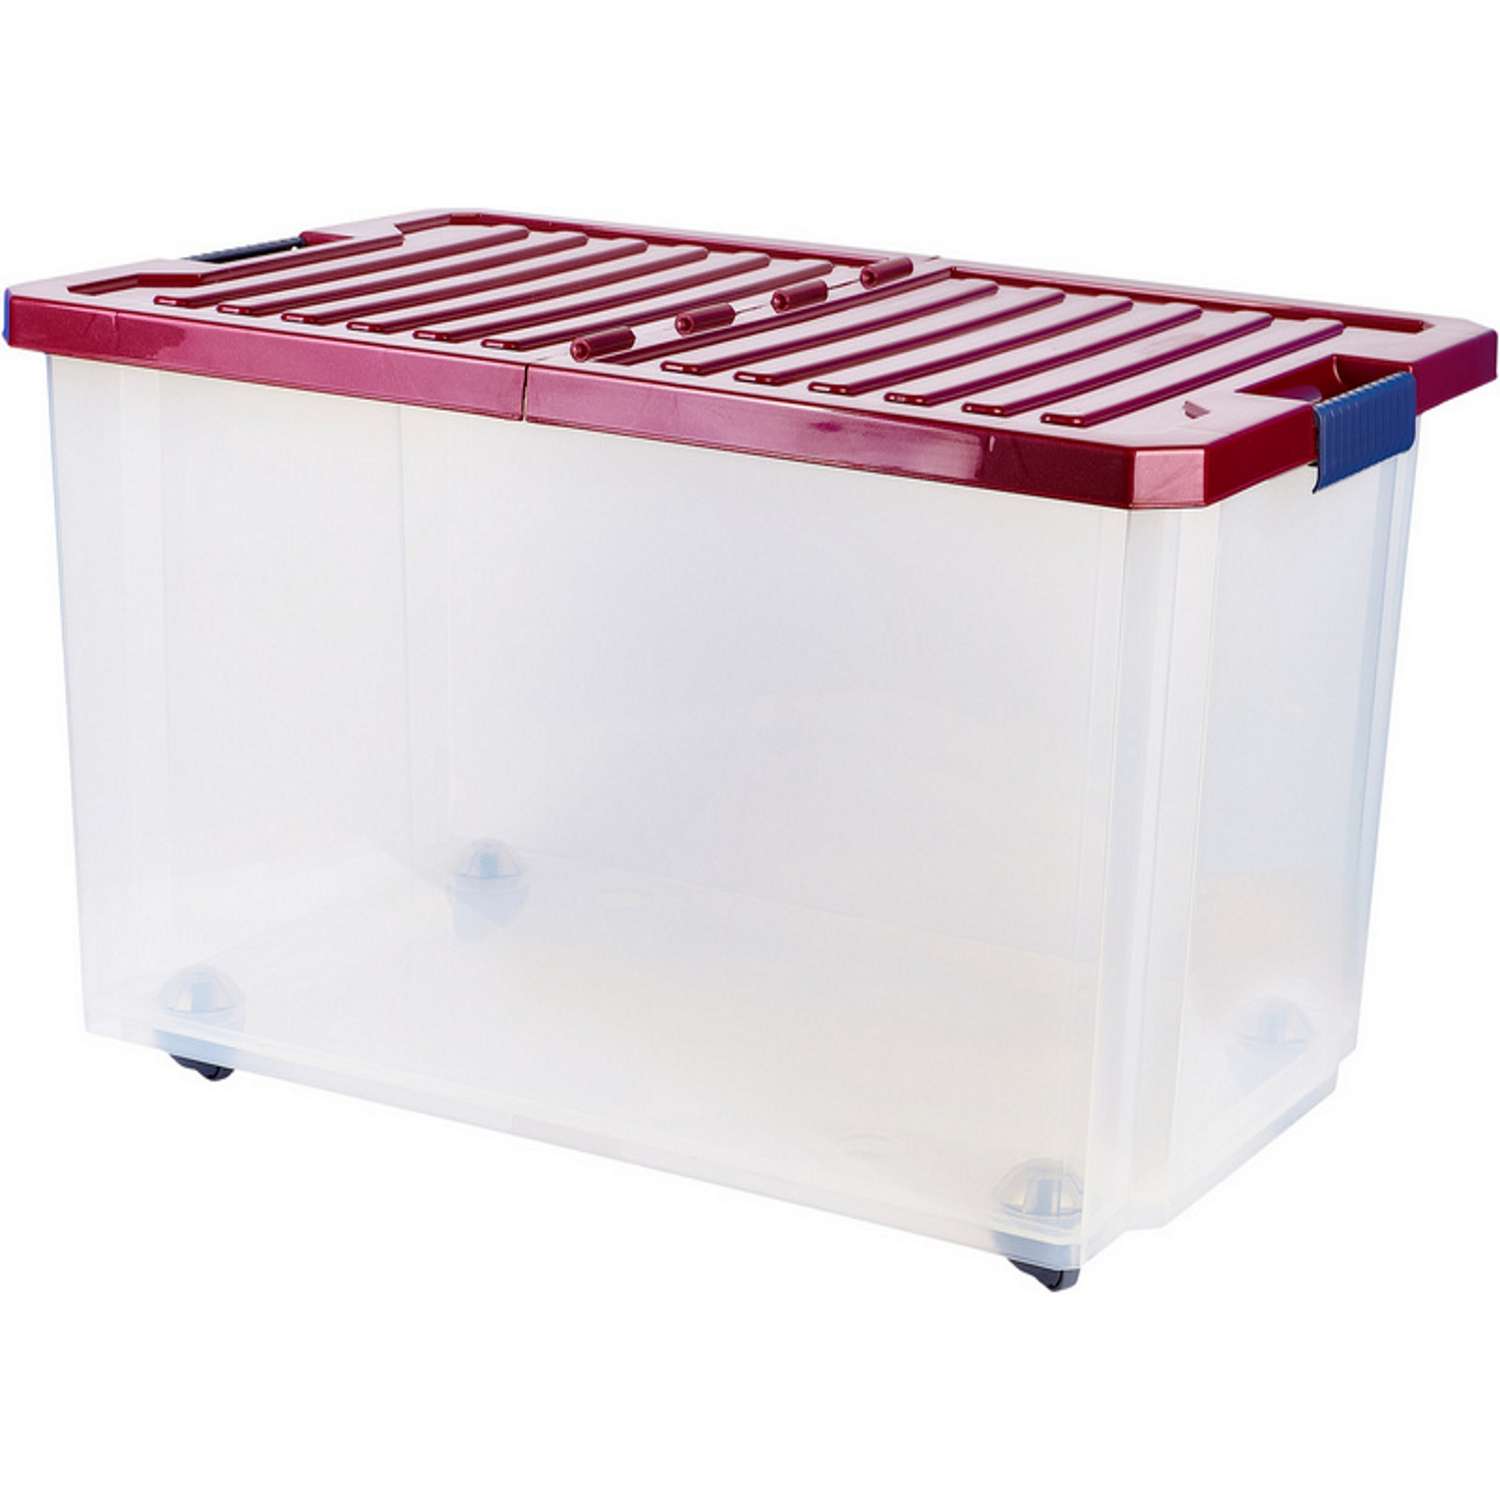 Ящик для игрушек PLASTIC REPABLIC baby со складной крышкой 57 л 61x40.5x33 см - фото 1